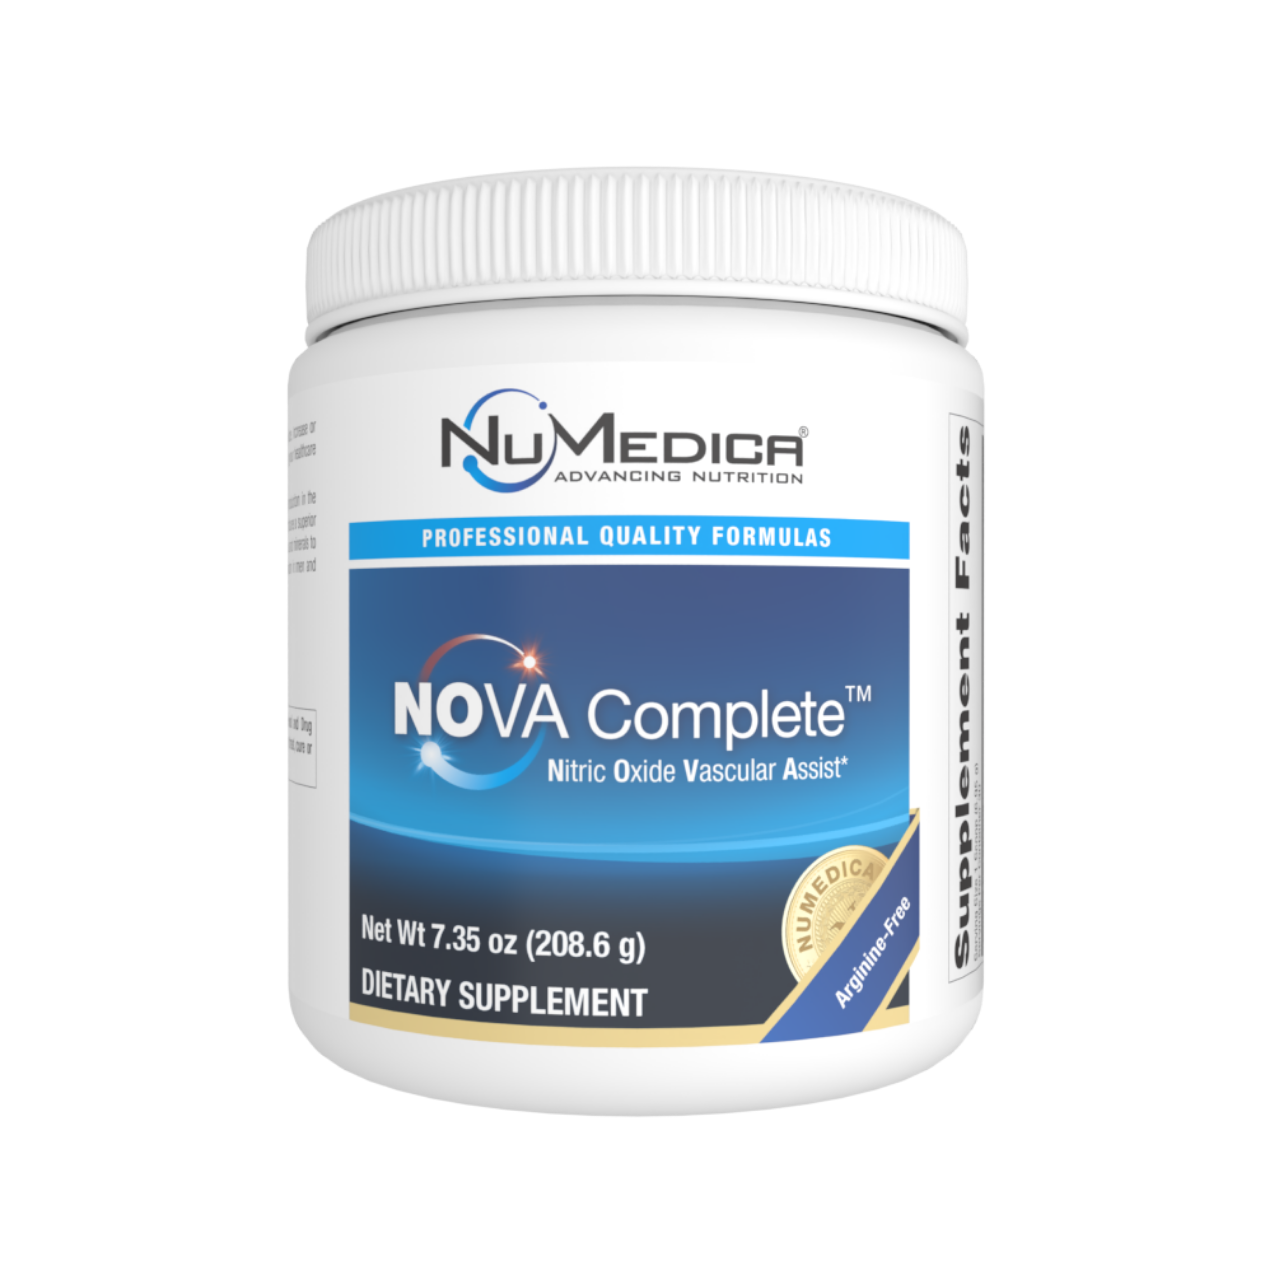 Numedica Nova Complete Nitric Oxide Vascular Assist